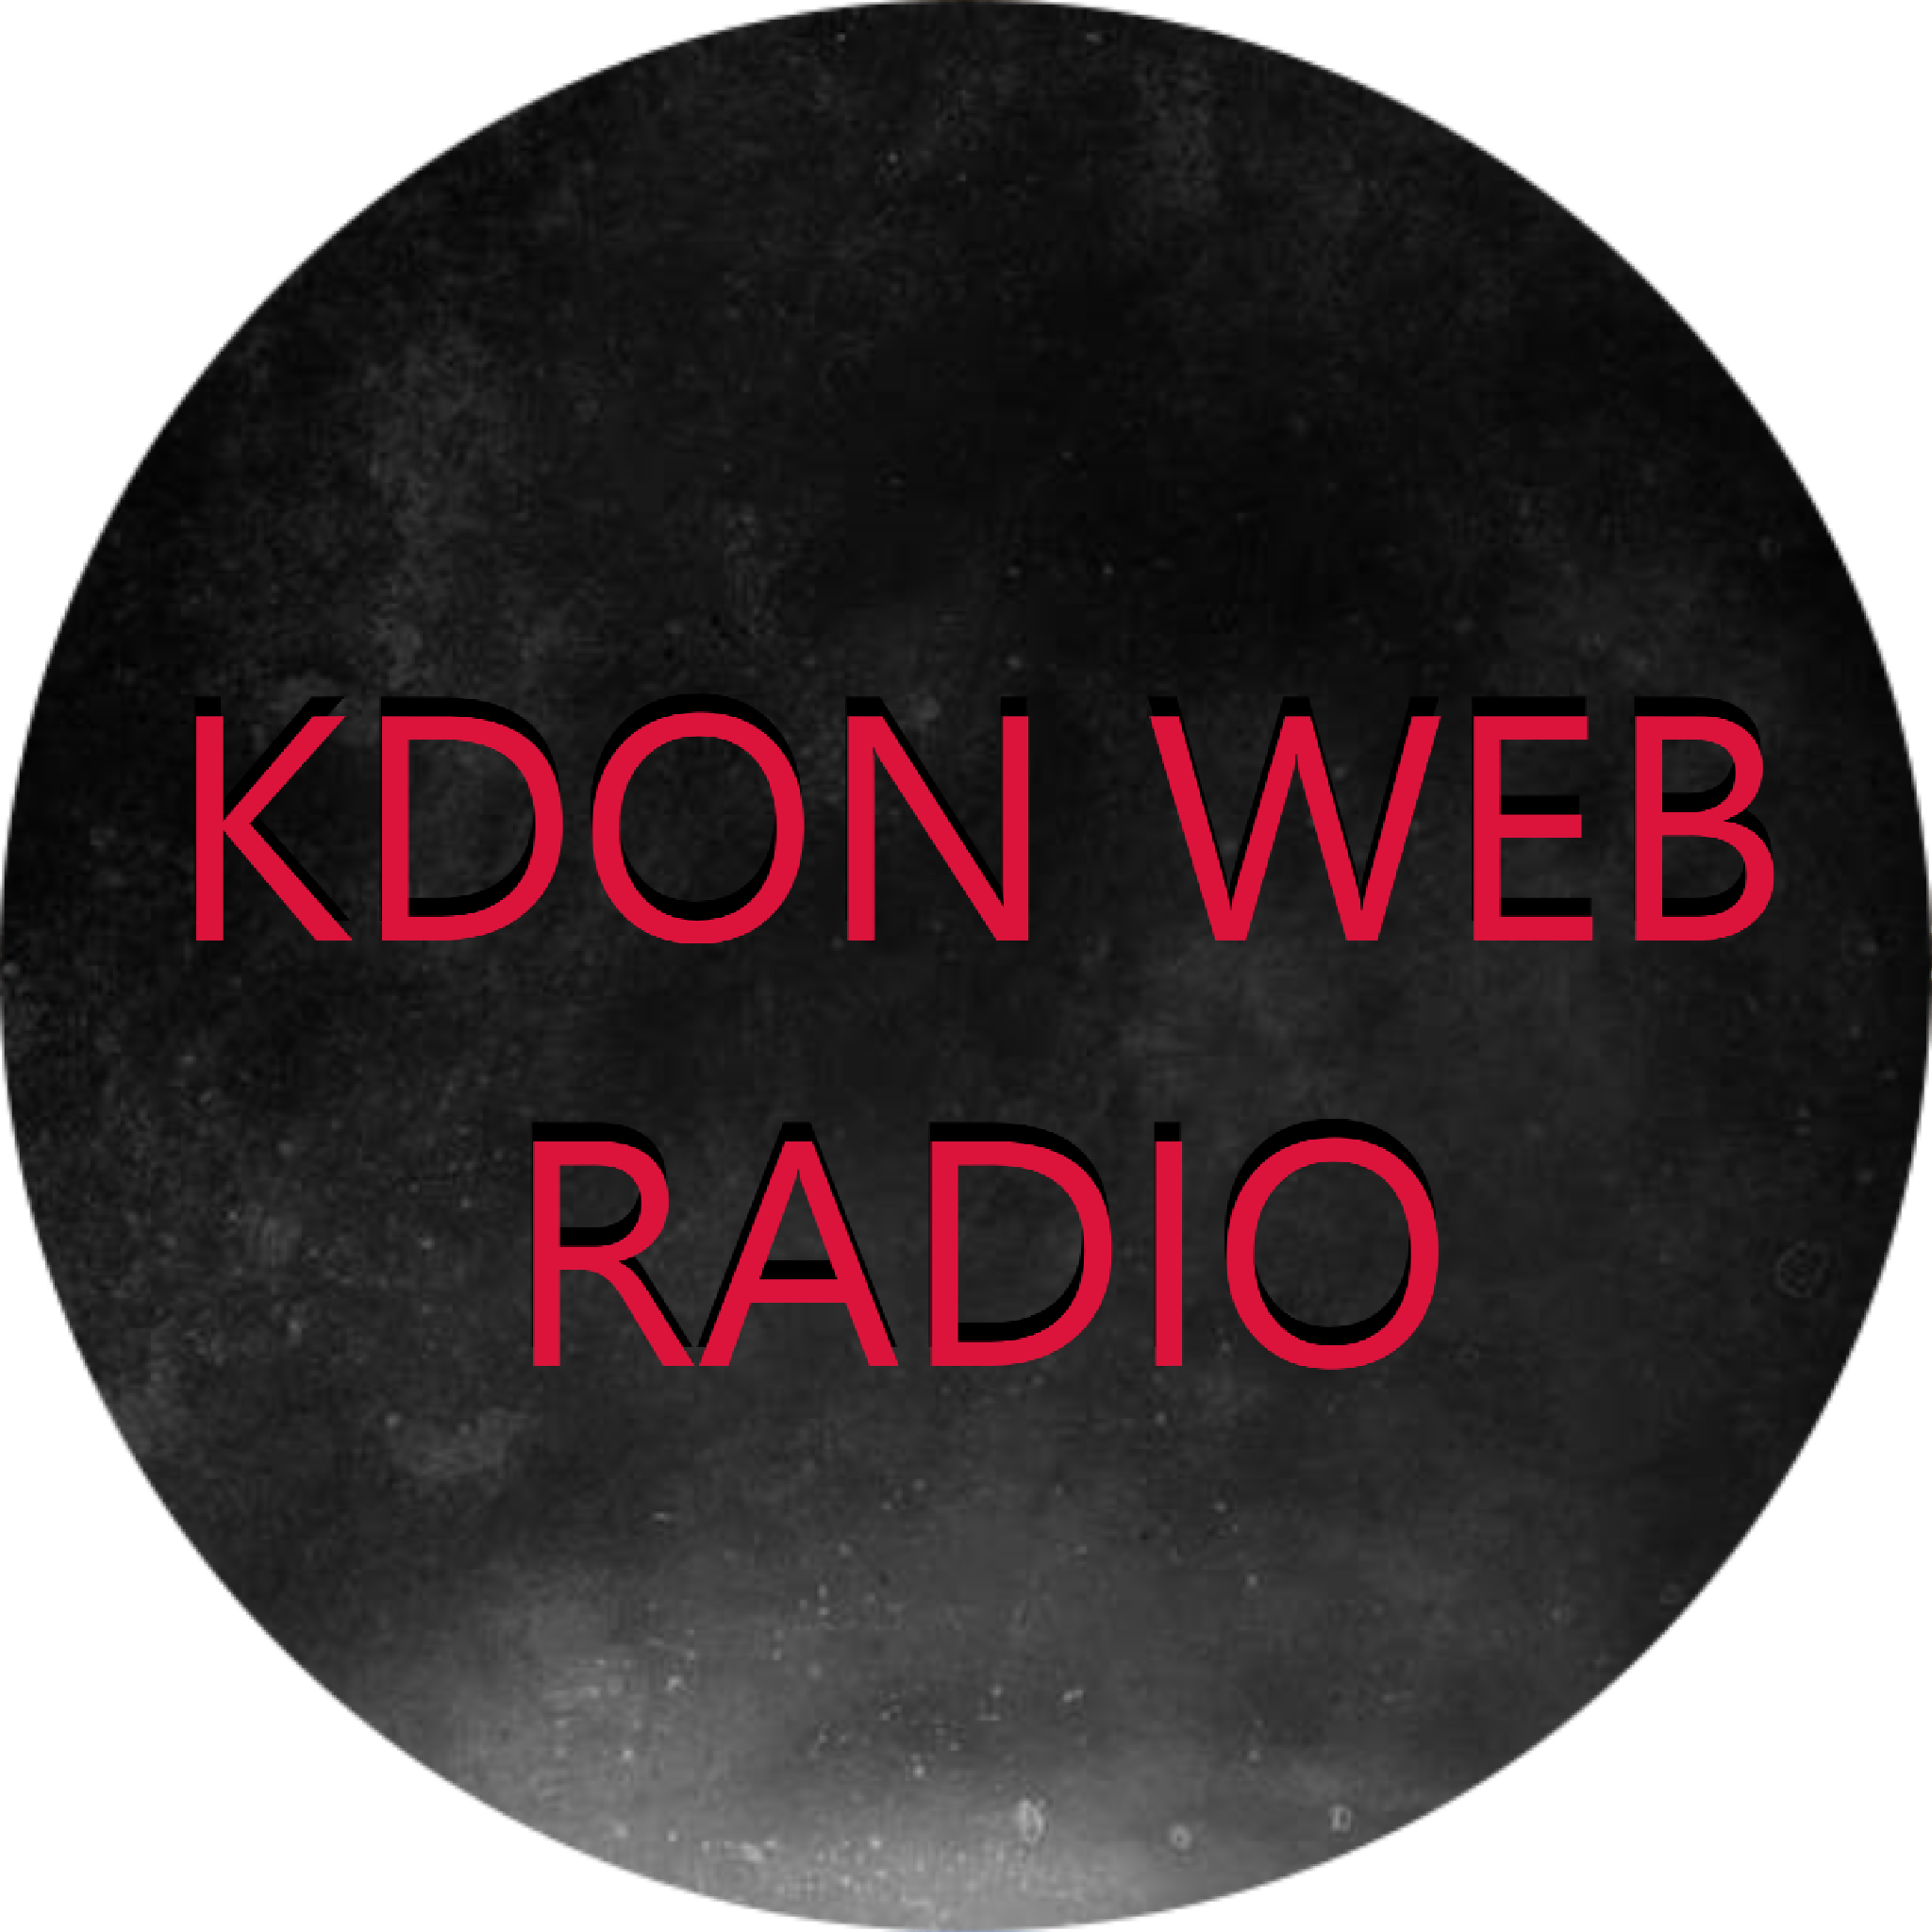 KDON WEB RADIO